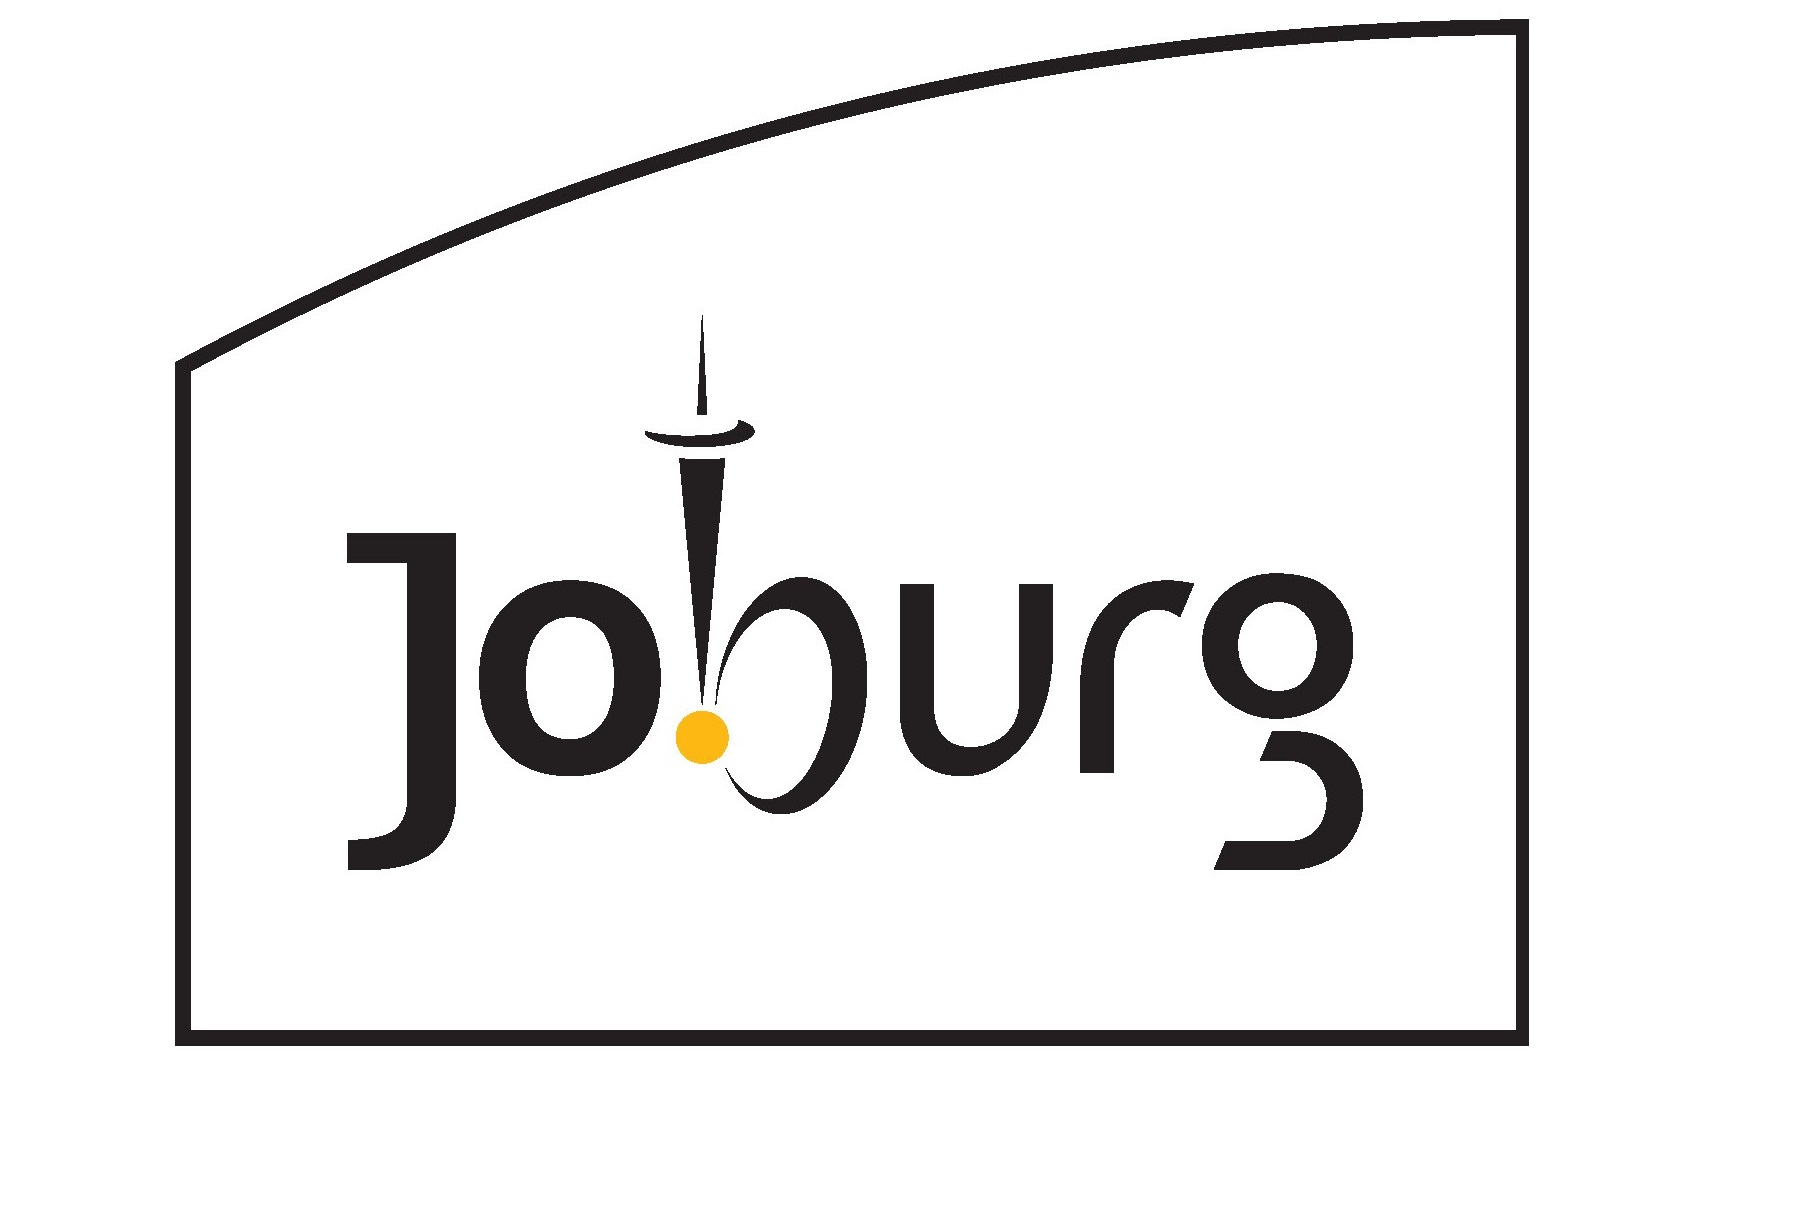 joburg-logo-edited-yellow2.jpg